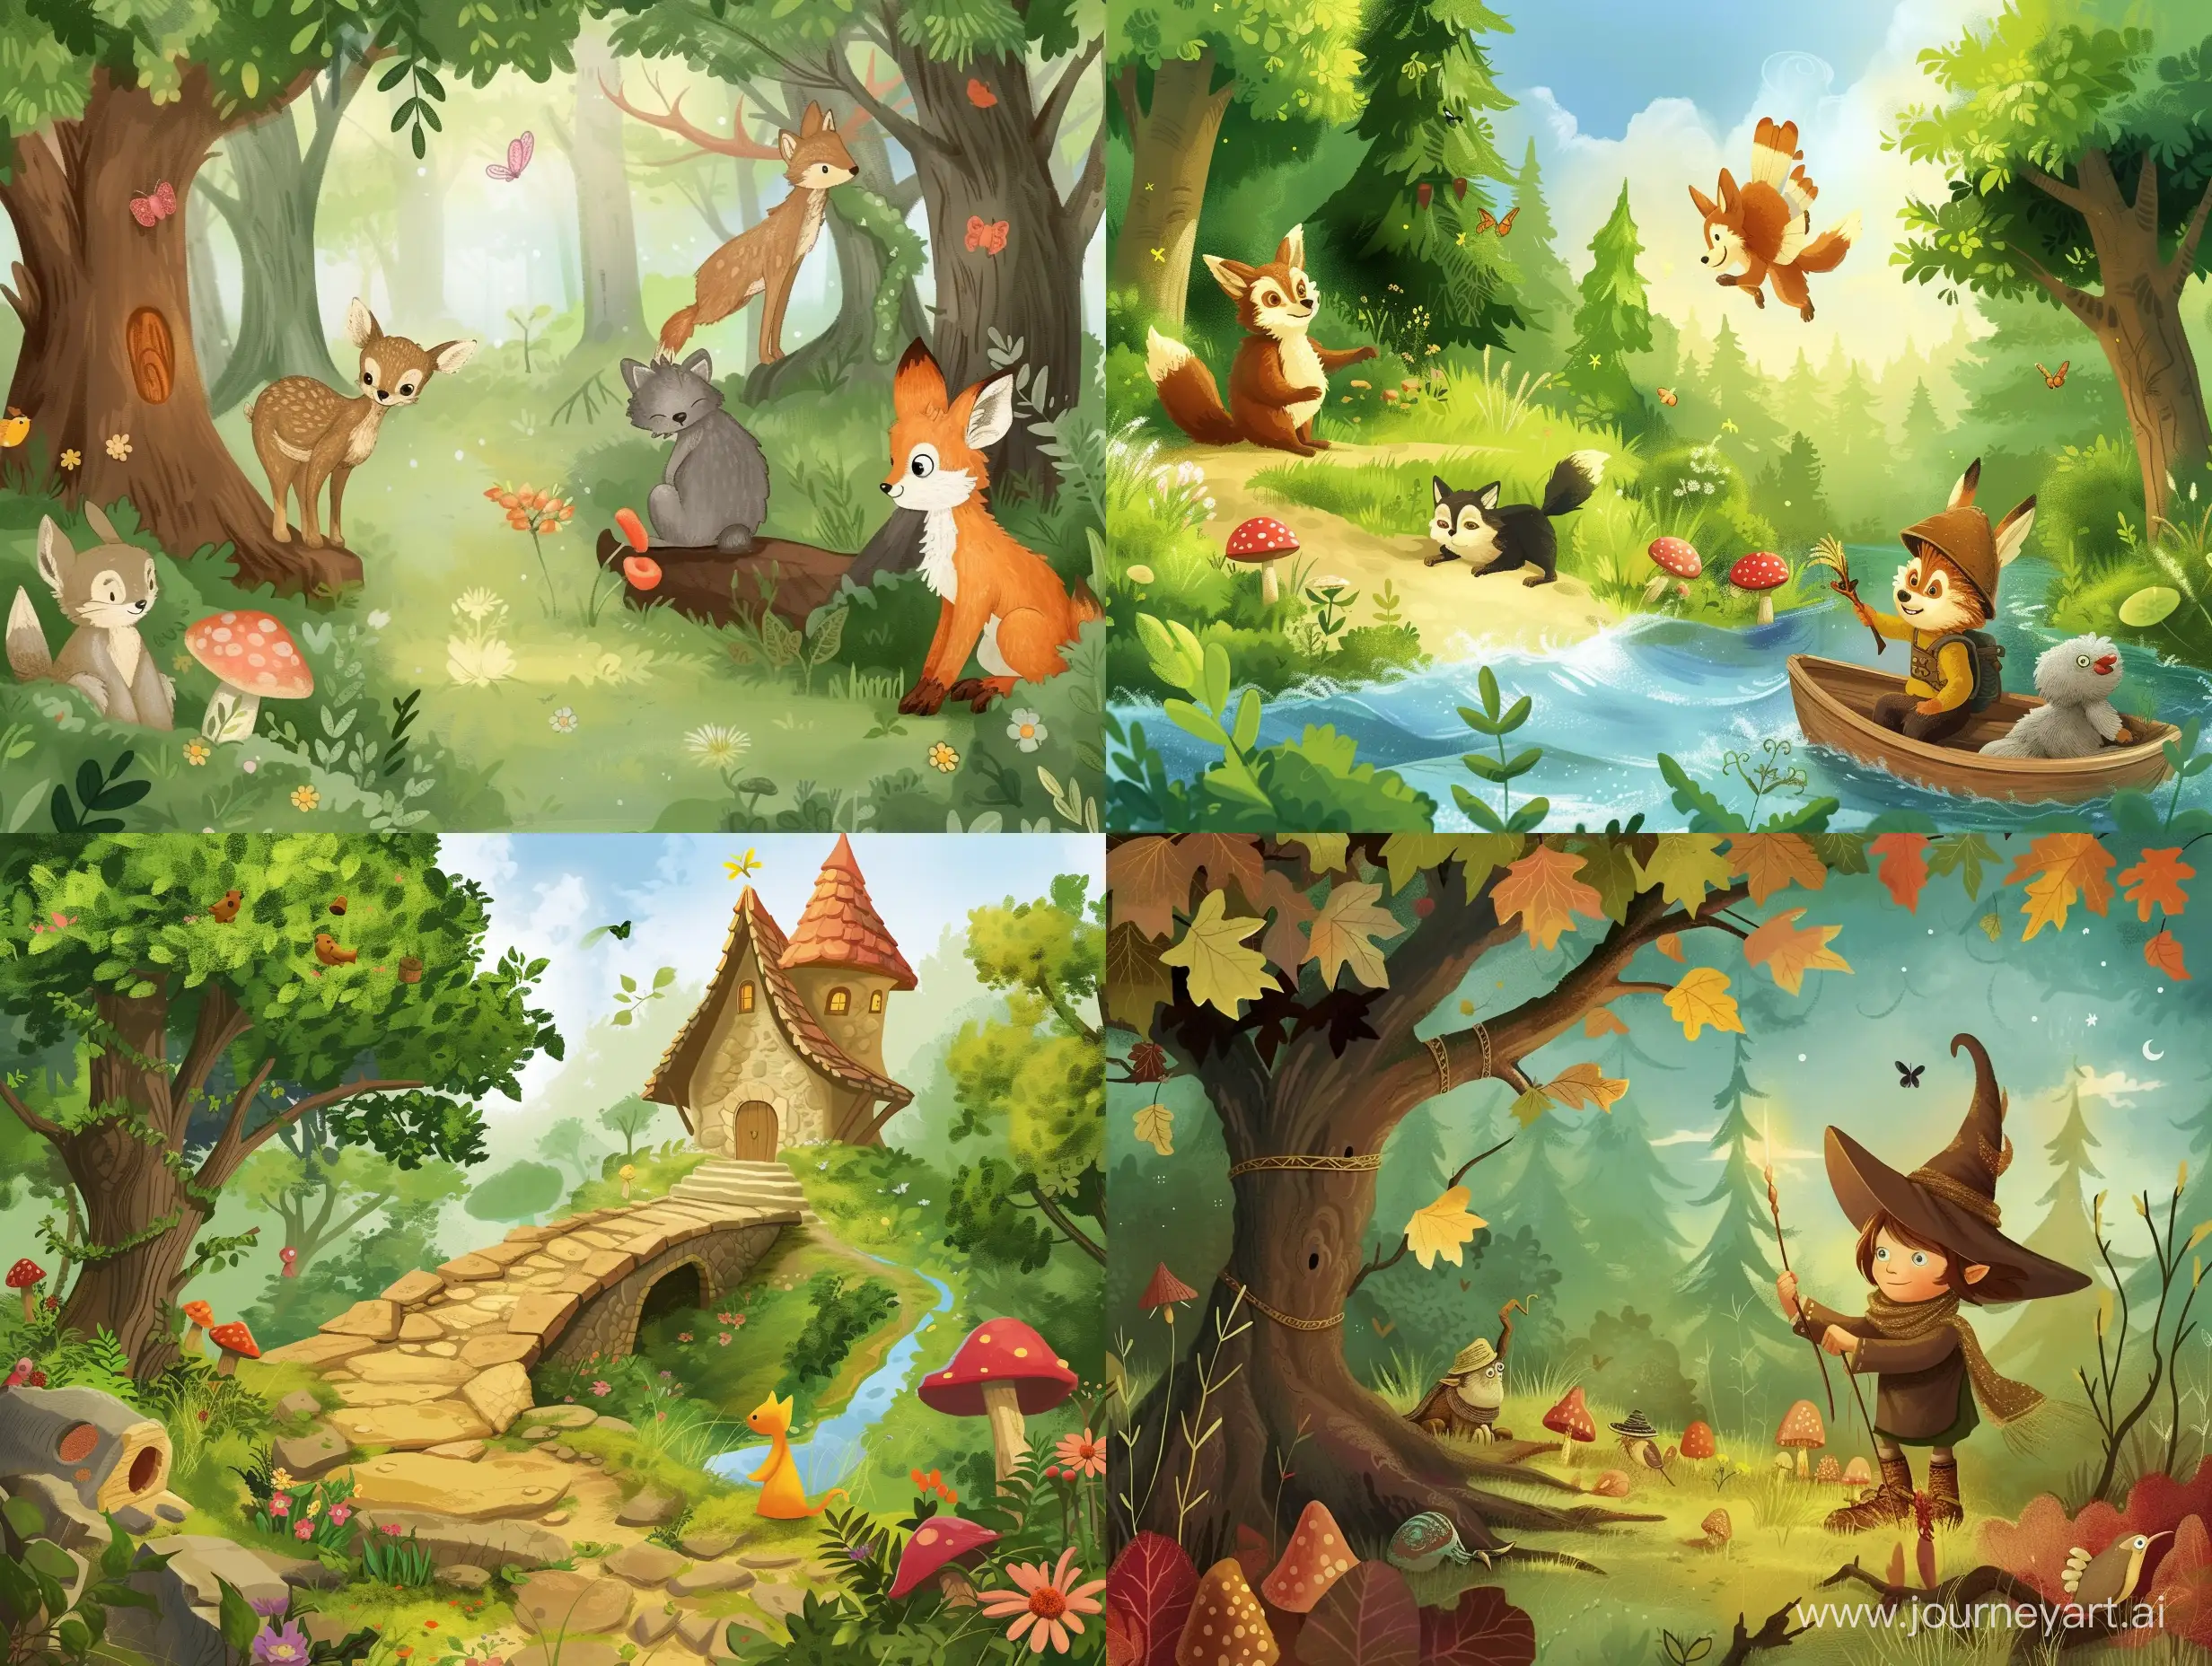 erstelle passende Illustratio für folgende kindergeschichte

Abenteuer im Zauberwald: